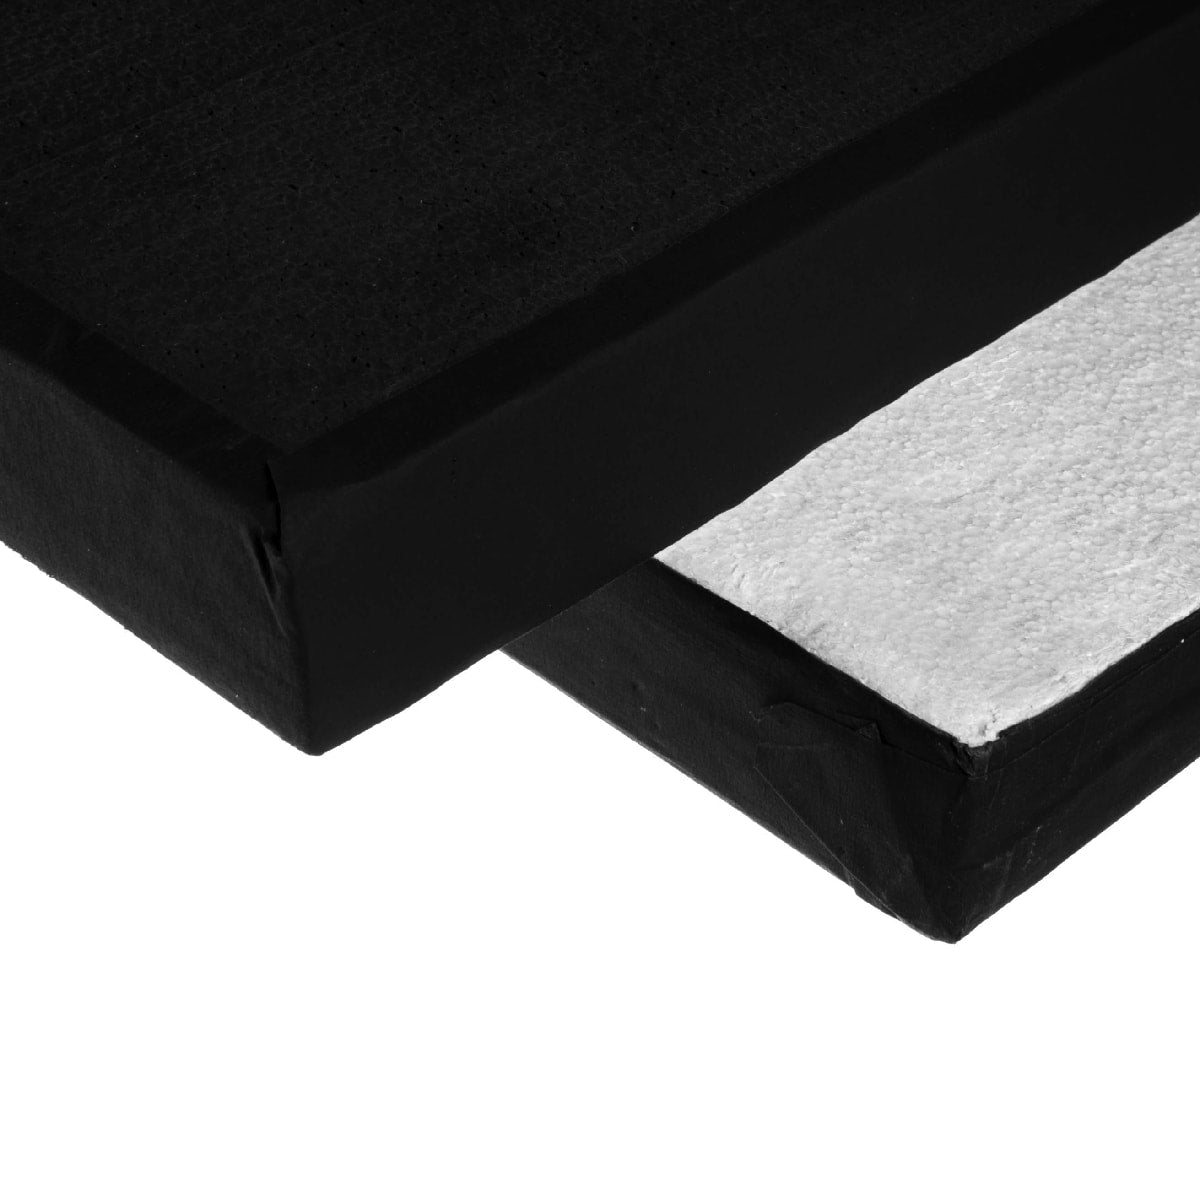  Polyboard black/white 120 x 300 cm / 4 x 10' (purchase)